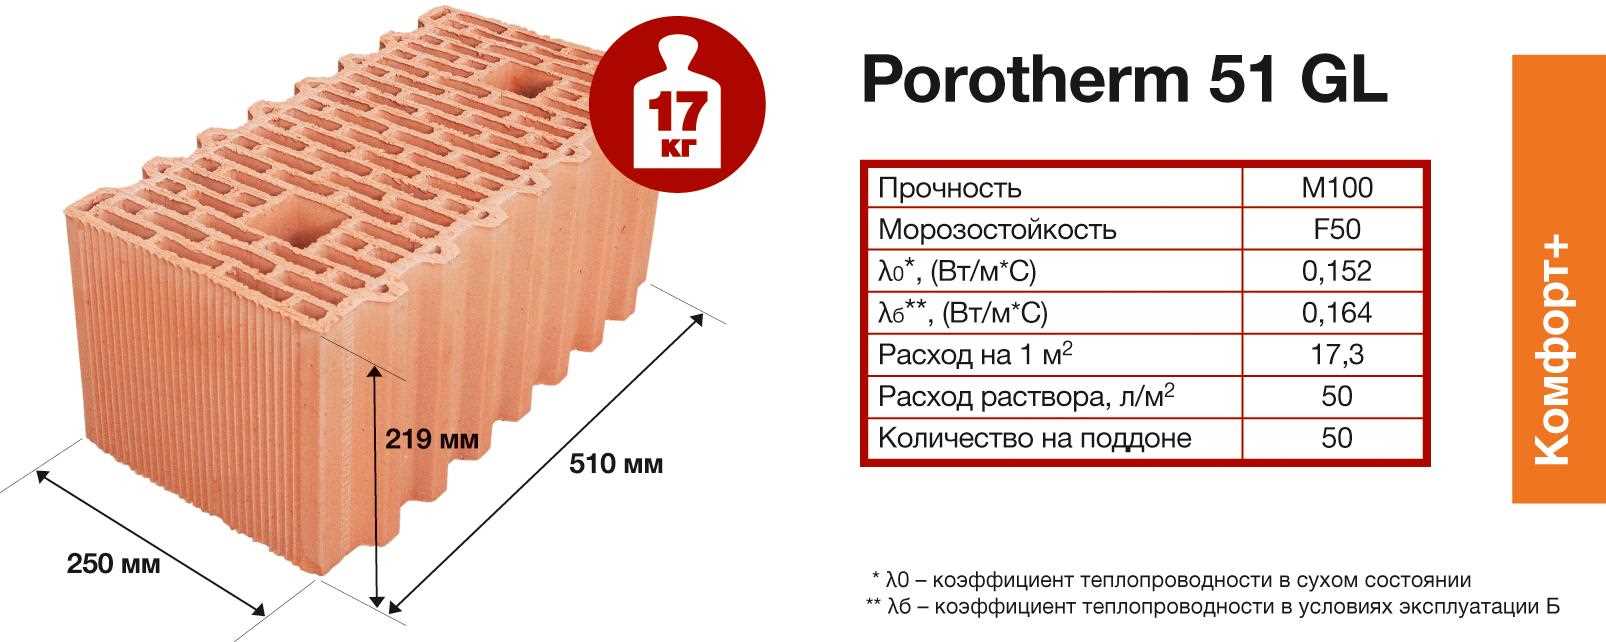 Главные достоинства и отличительные особенности керамических блоков Porotherm от Wienerberger